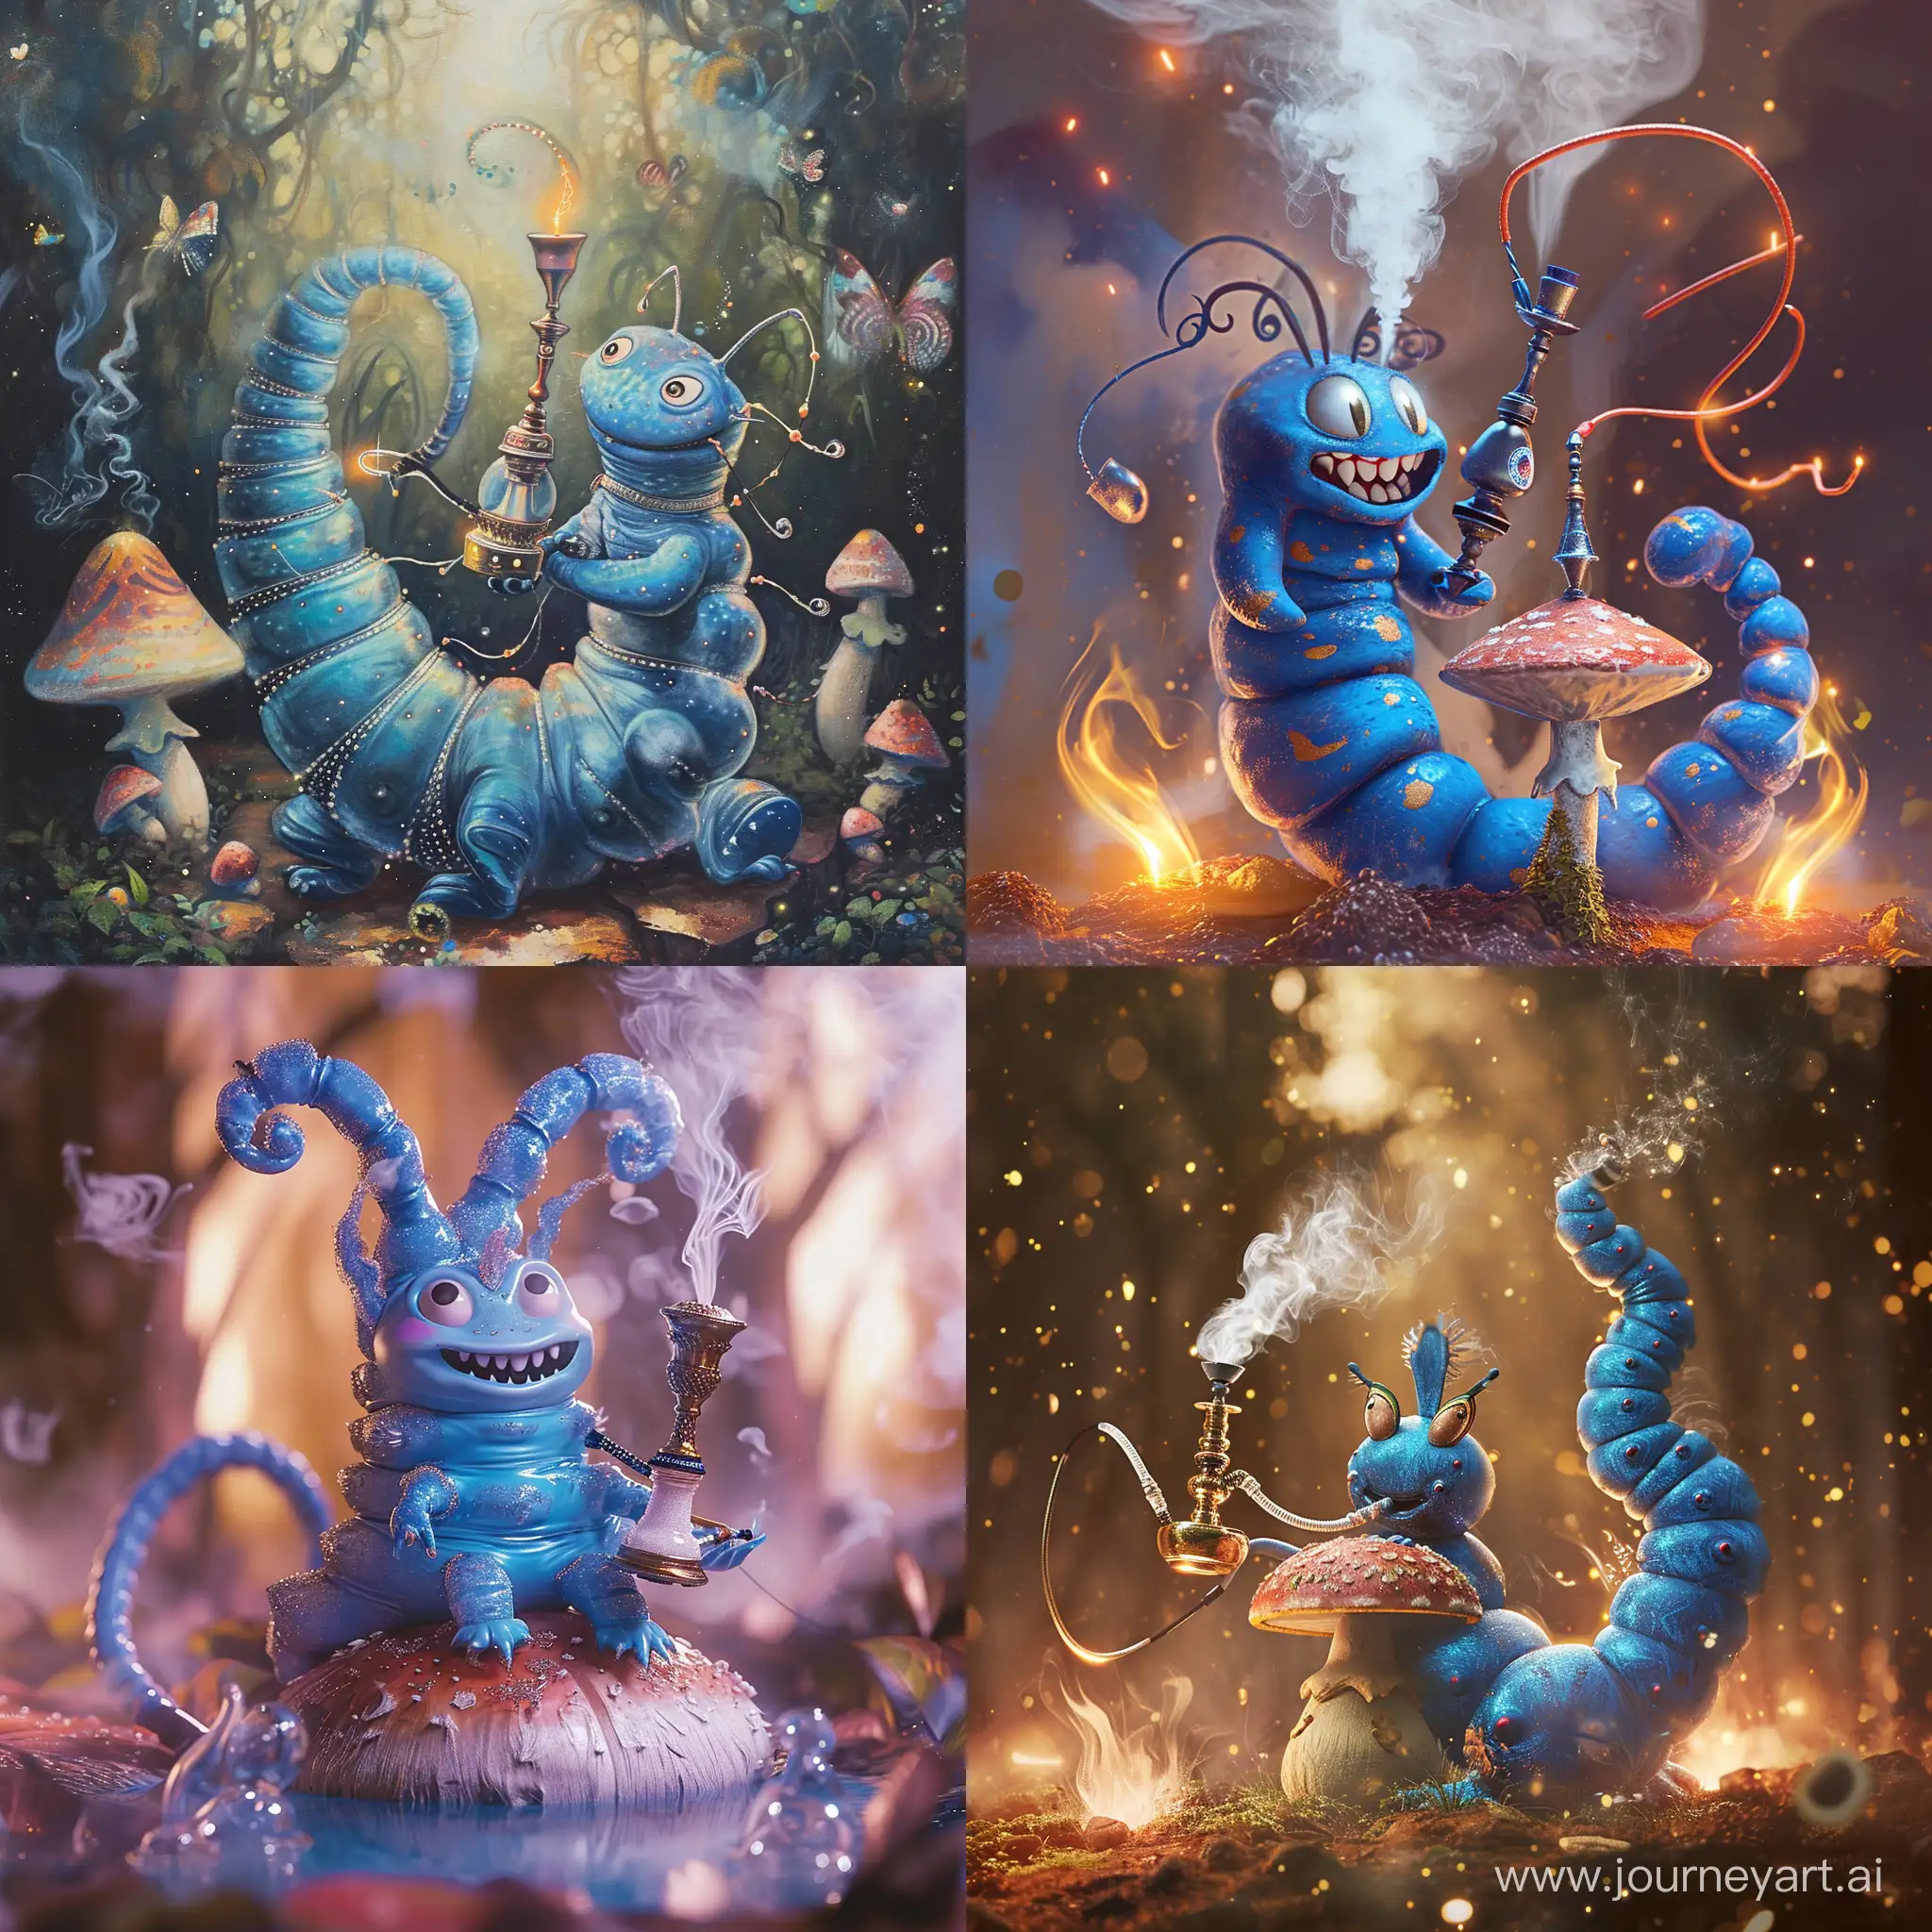 Enchanting-Blue-Caterpillar-with-Hookah-on-Magic-Mushroom